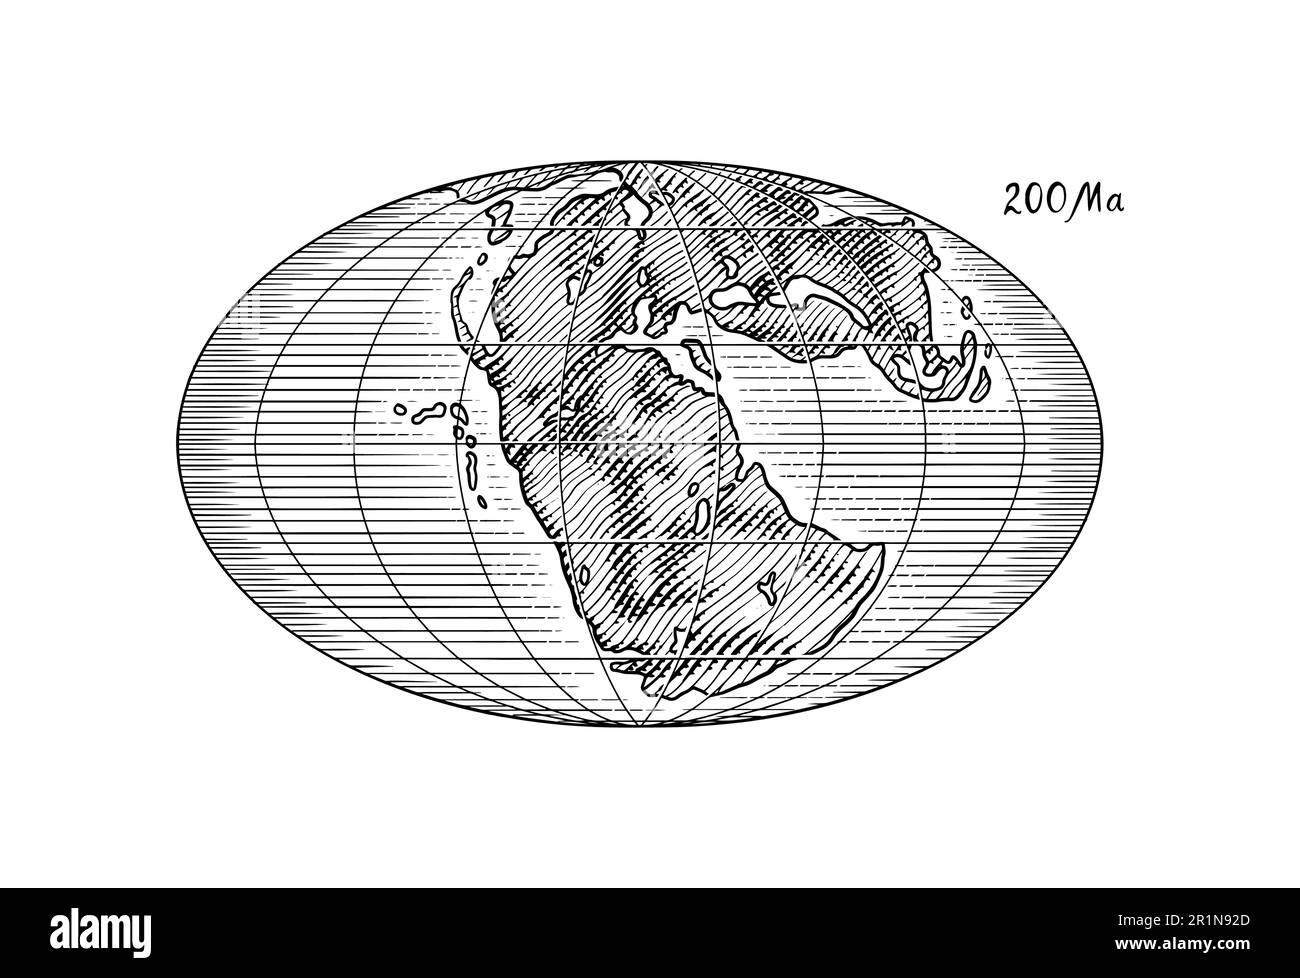 Plattentektonik auf dem Planeten Erde. Pangaea. Kontinentale Drift. Superkontinent bei 200 Ma. Die Ära der Dinosaurier. Jurassezeit. Mesozoisch. Handgezeichnet Stock Vektor